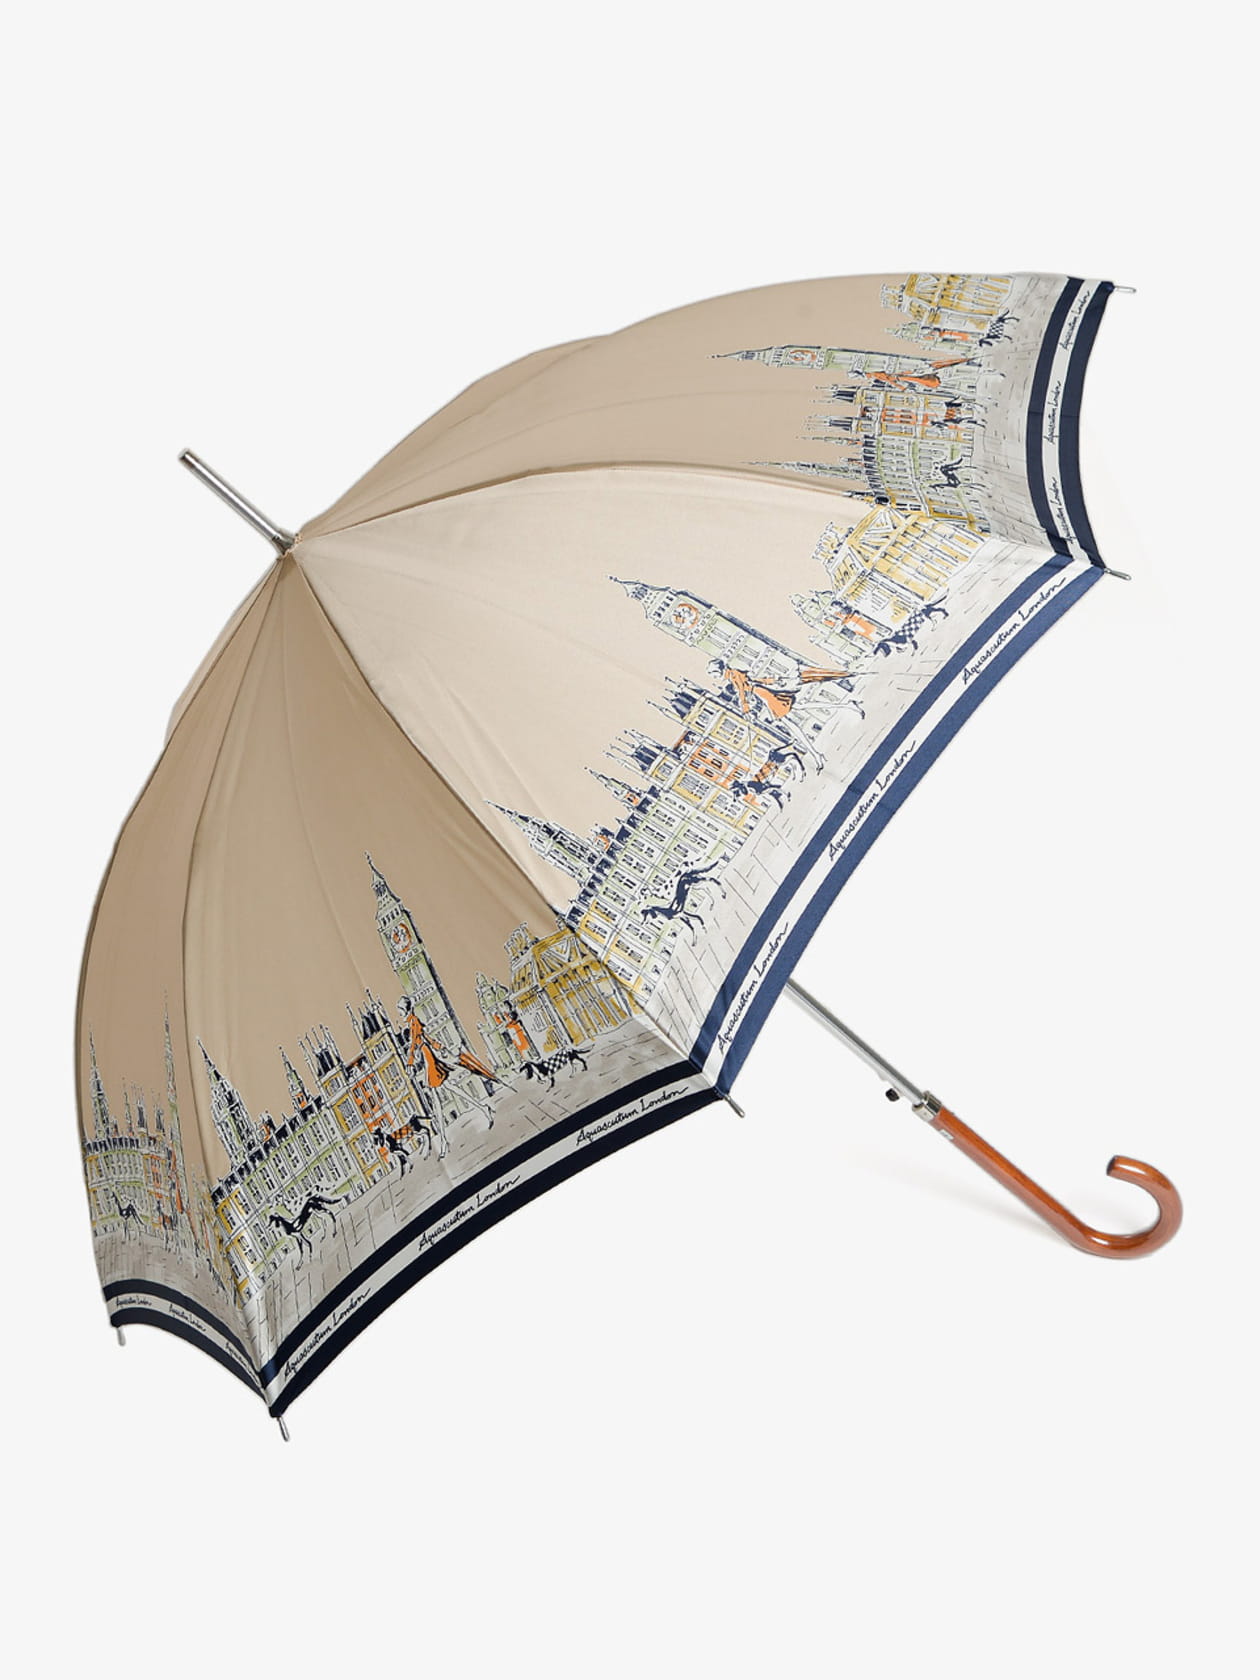 ダイゾー ナチュラル アクアスキュータム雨傘 傘袋付き | www